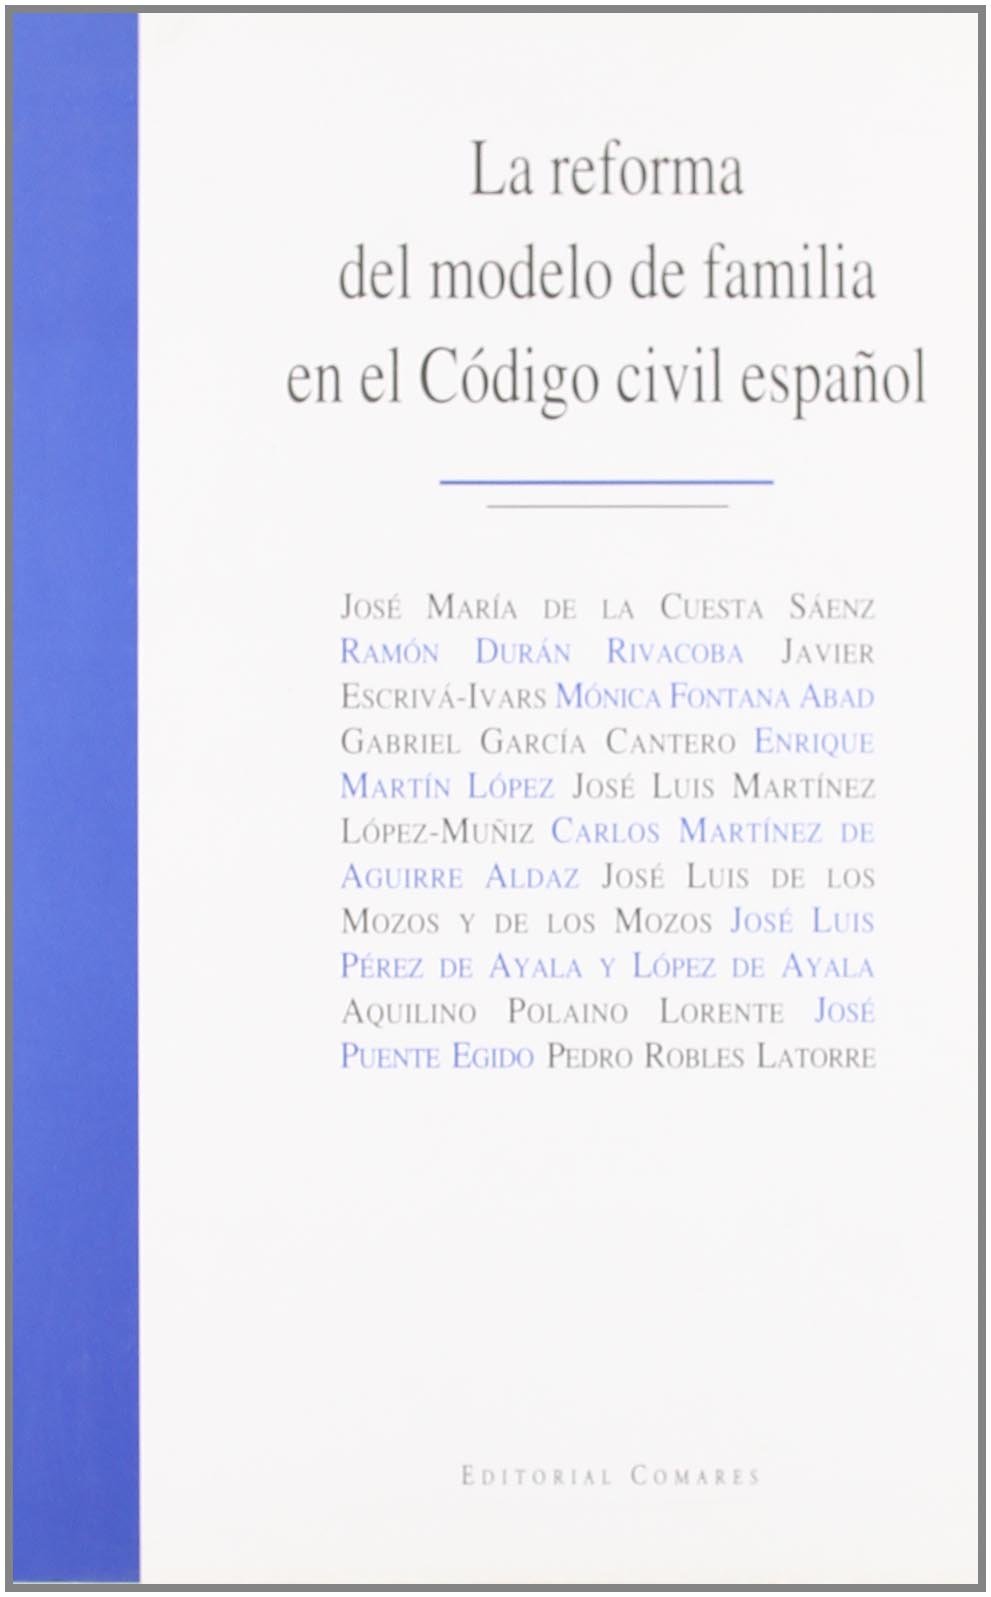 La reforma del modelo de familia en el Código civil español: 17 y 18 de  junio de 2005, Universidad San Pablo-CEU - Dialnet